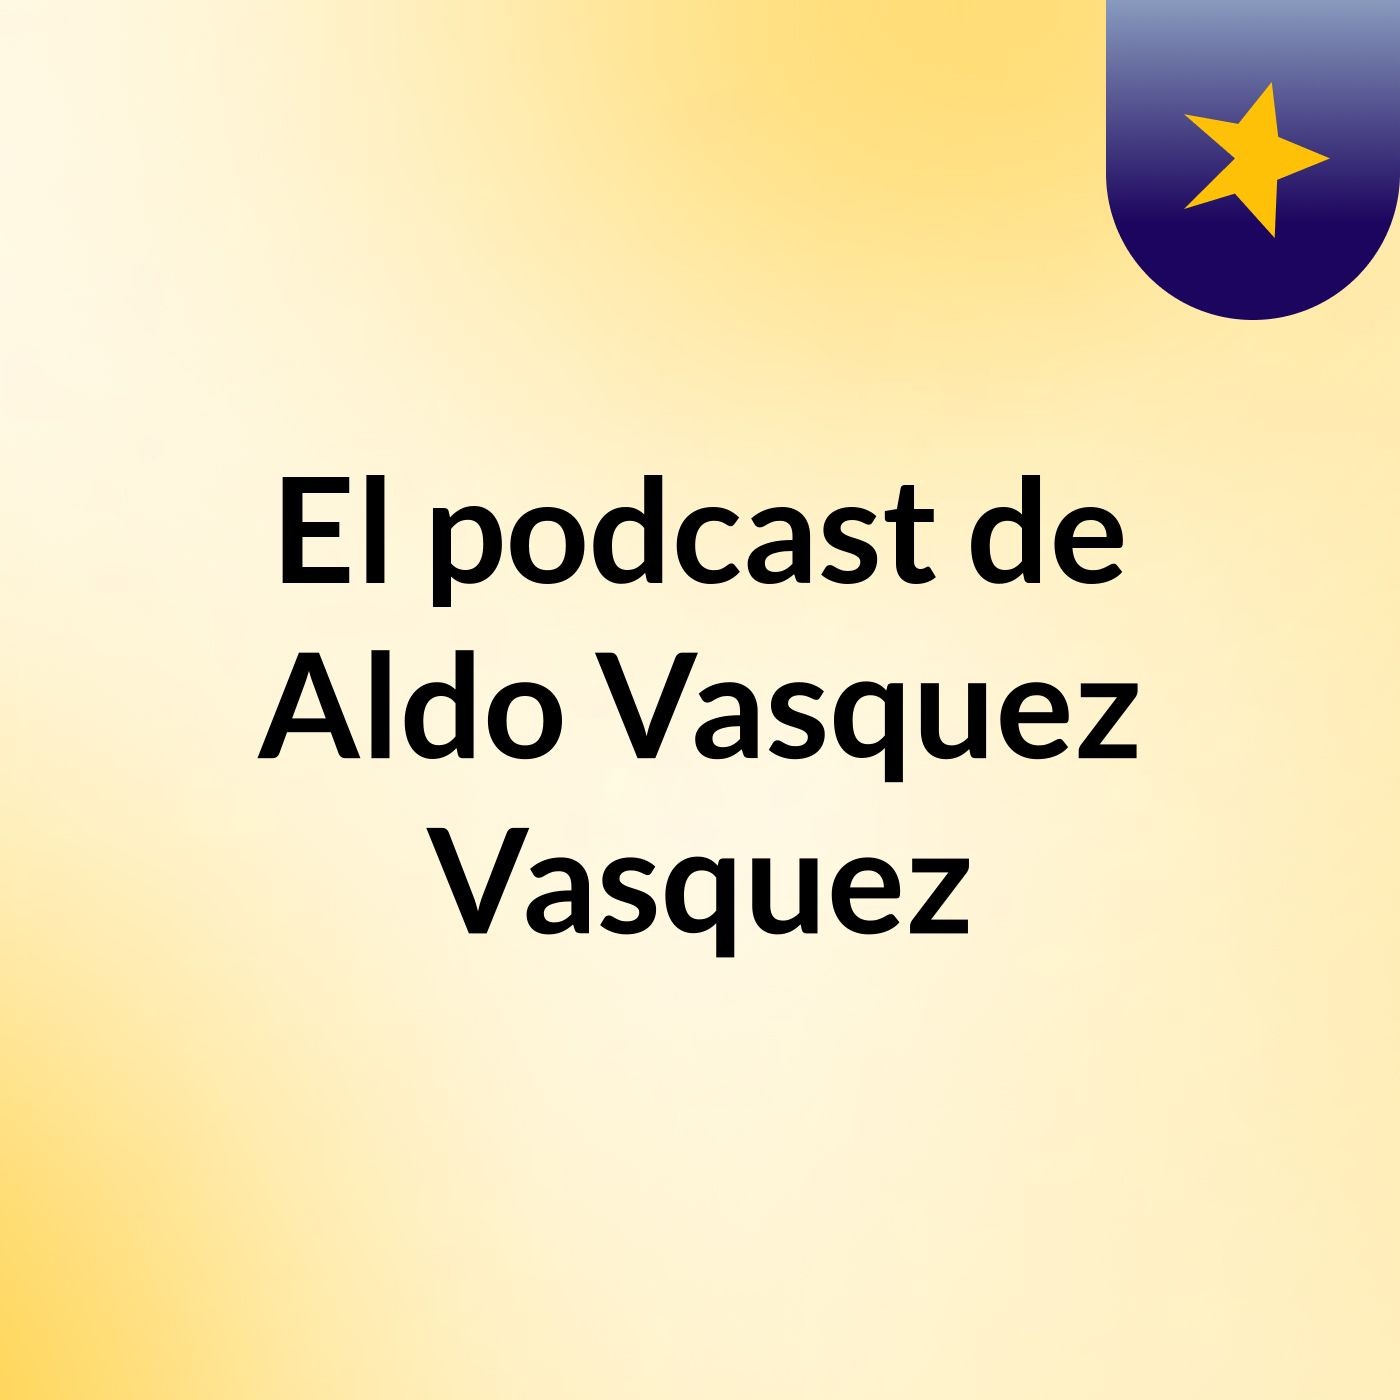 El podcast de Aldo Vasquez Vasquez